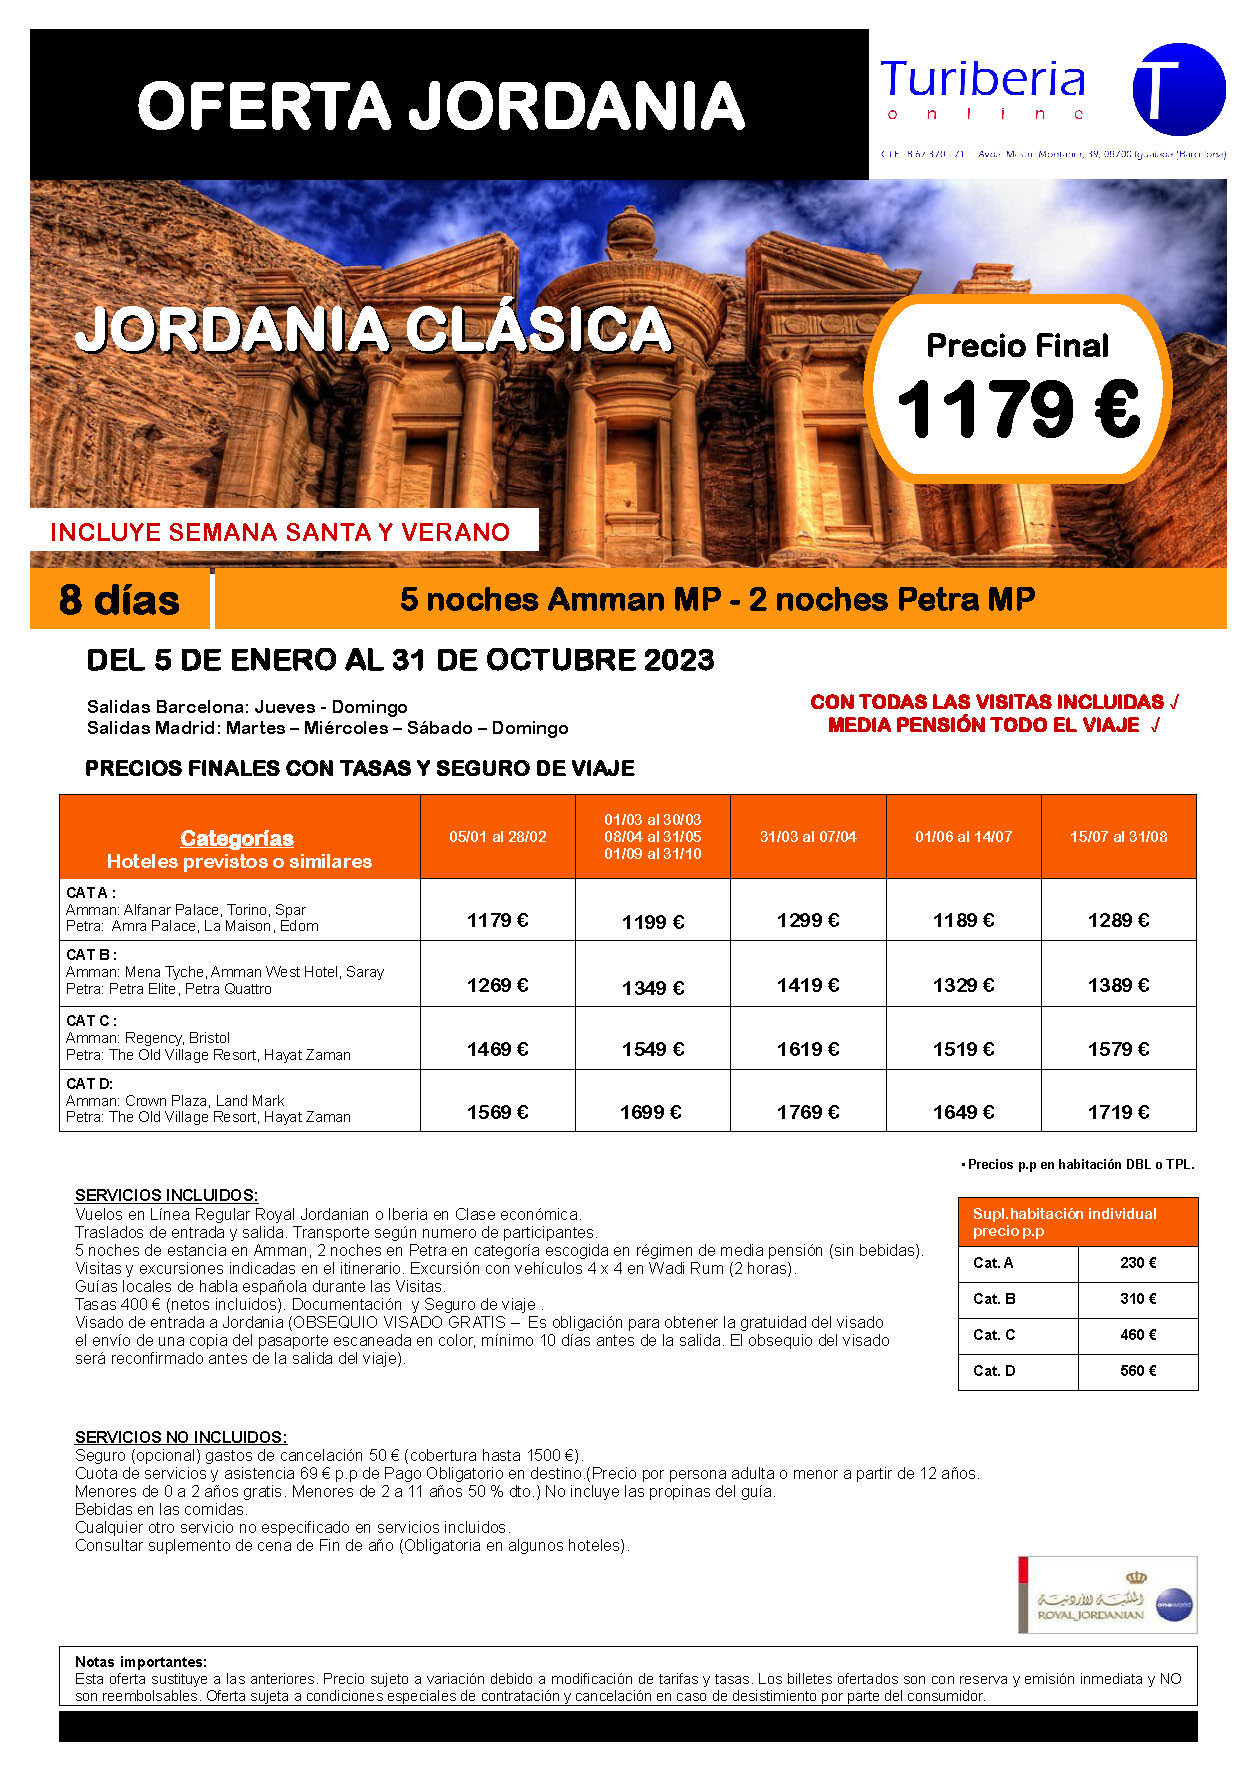 Ofertas Turiberia Jordania 2023 circuito Jordania Clasica 8 dias salida en vuelo directo desde Barcelona y Madrid